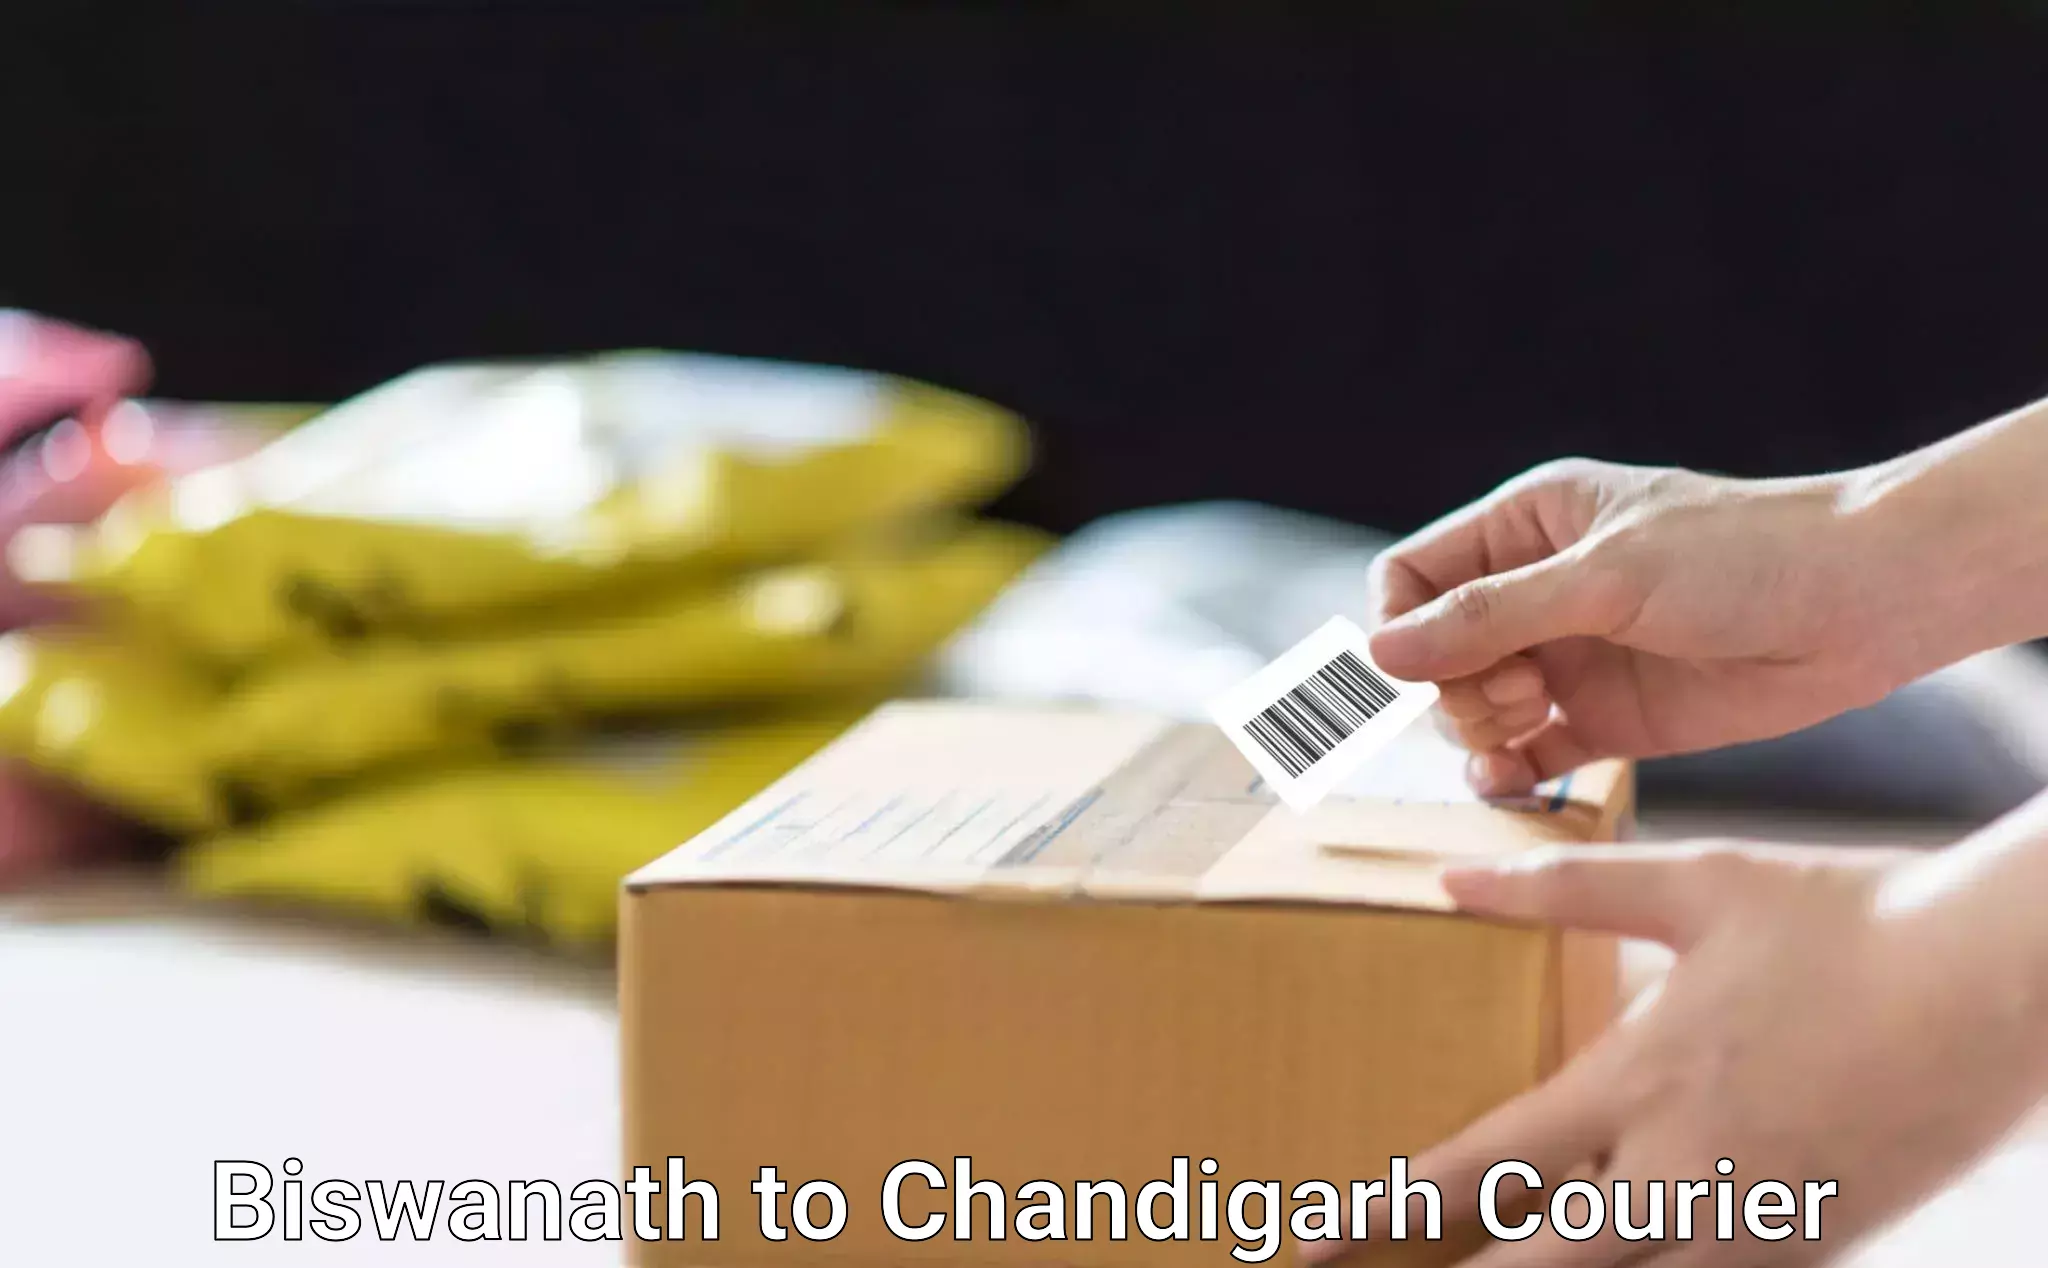 High-speed parcel service Biswanath to Chandigarh